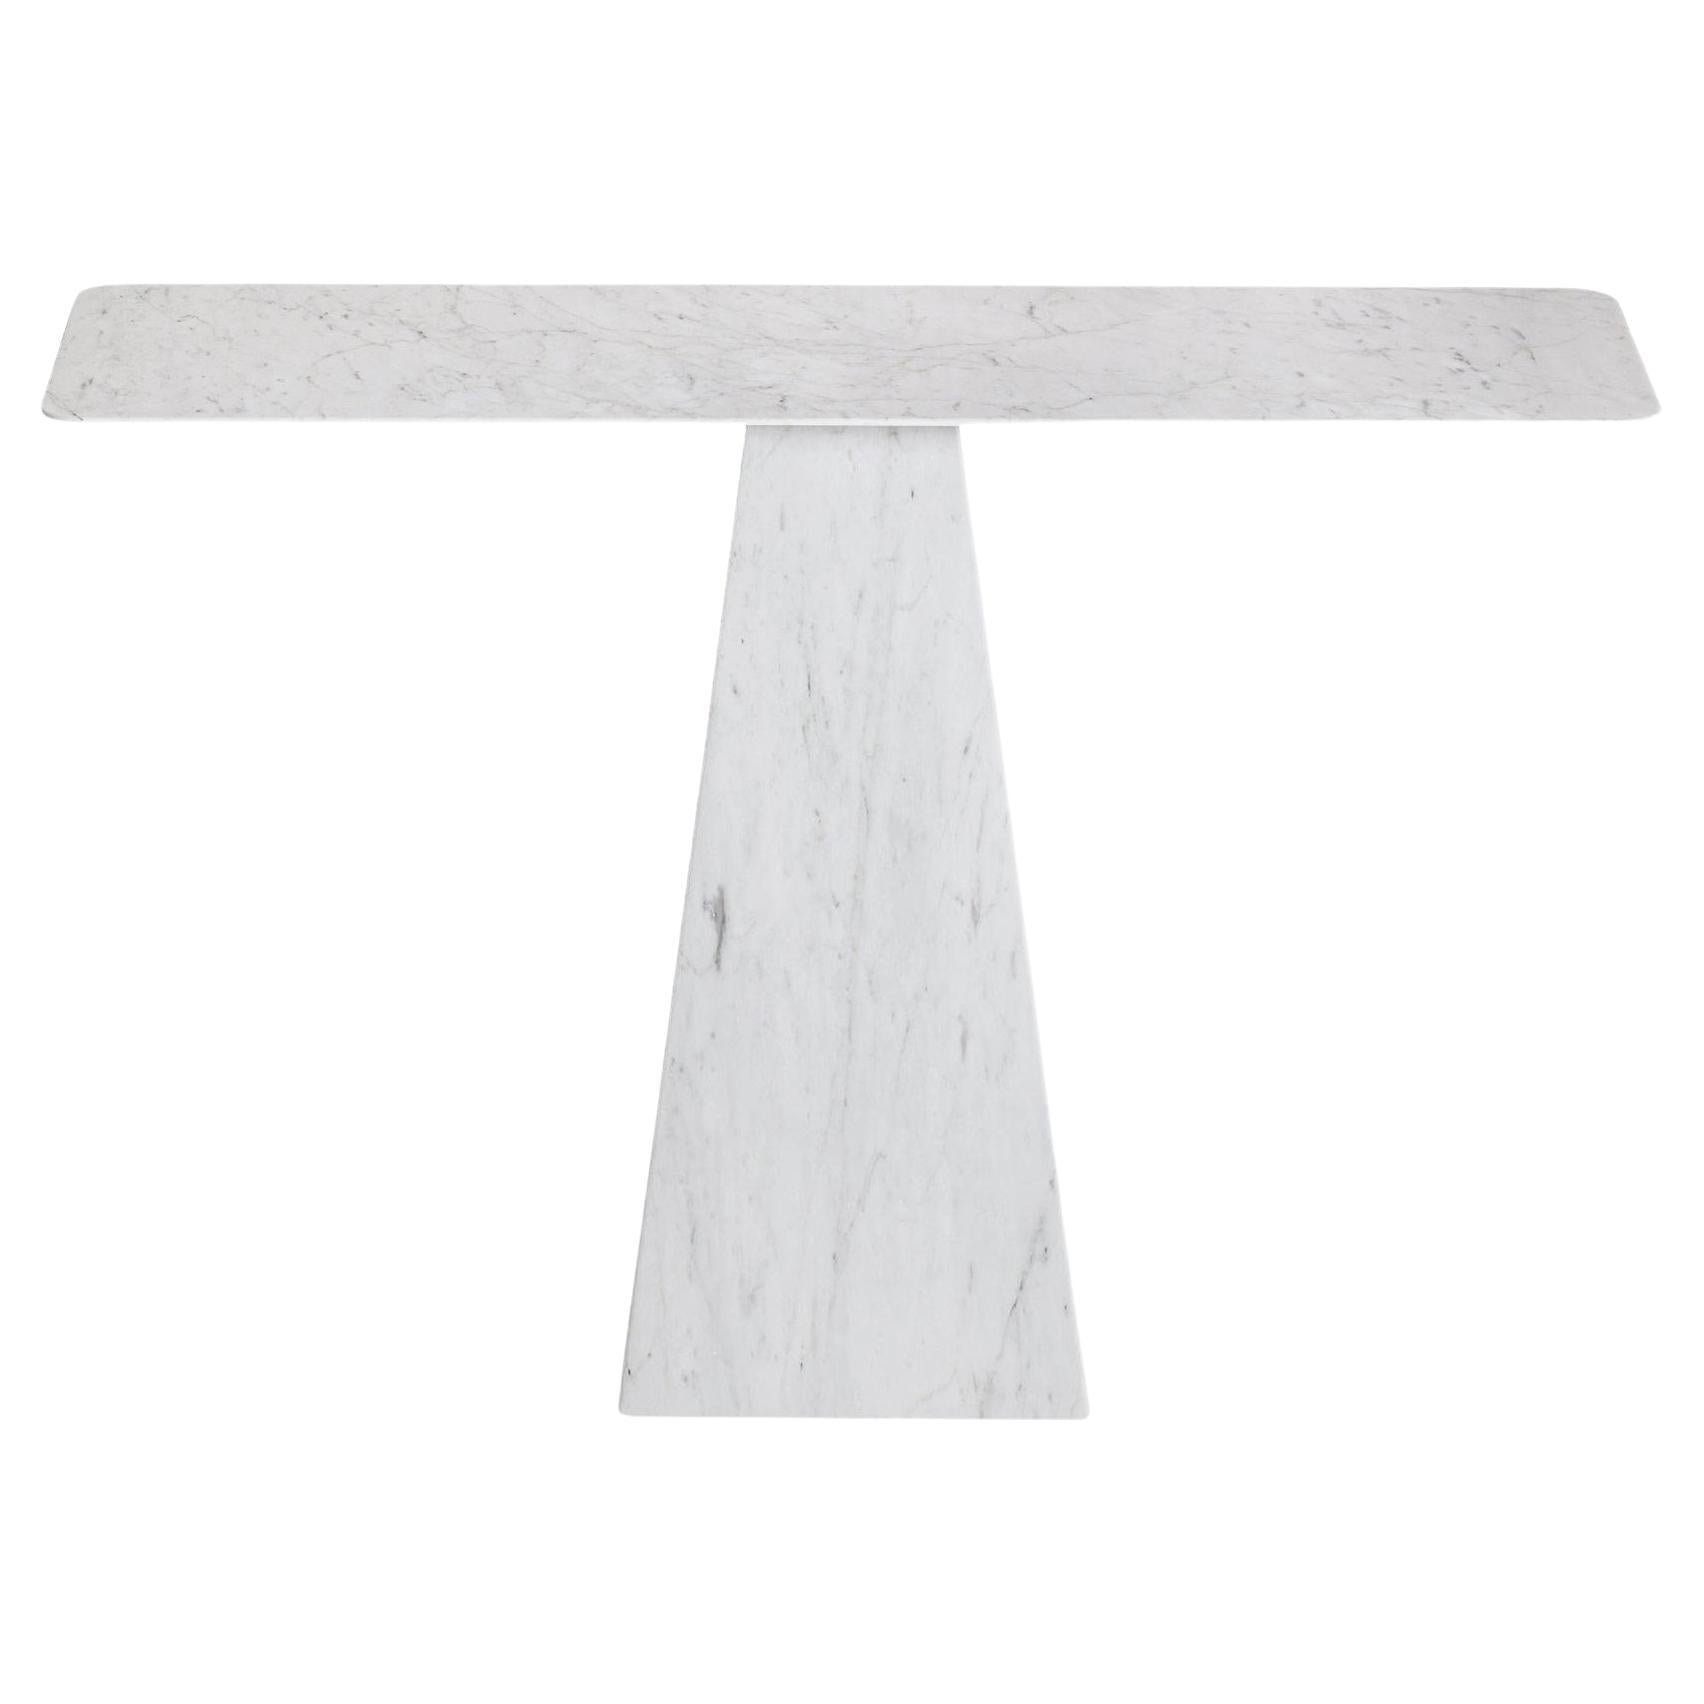 Konsolentisch aus weißem Carrara-Marmor, dünn